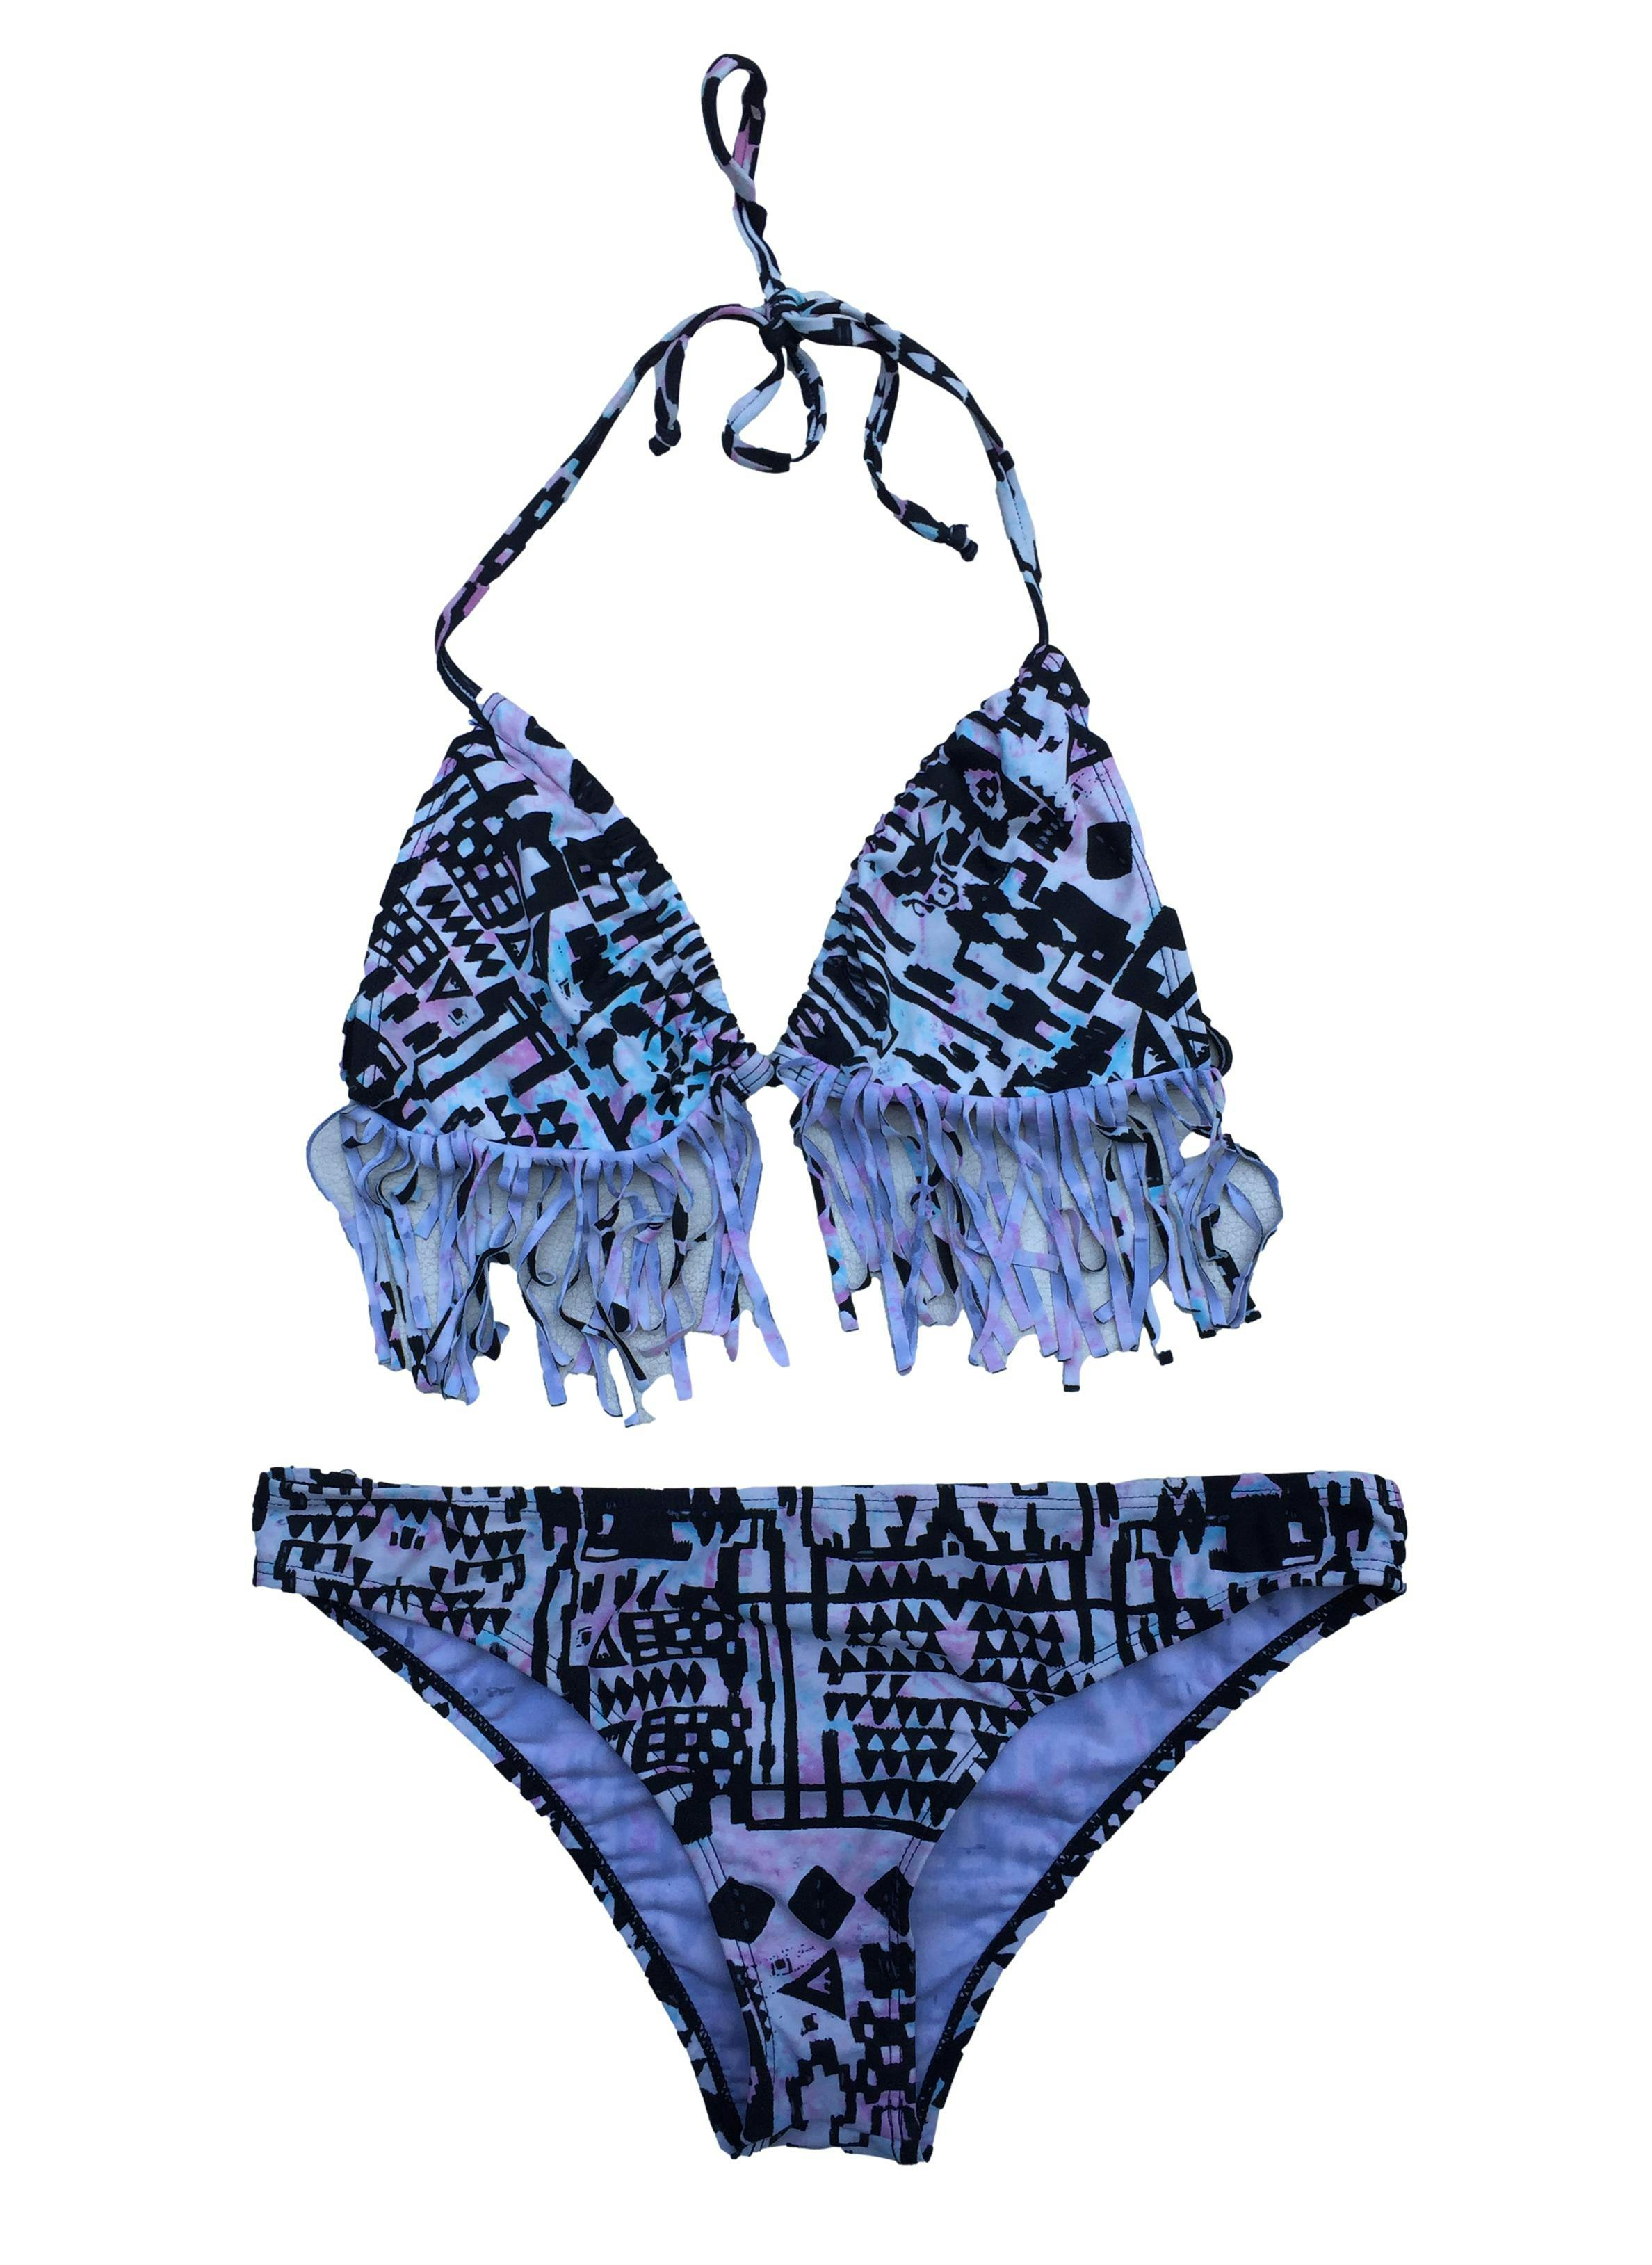 Bikini Hypnotic de dos piezas, estampado tribal, parte superior con flecos y pasadores para anudarse.